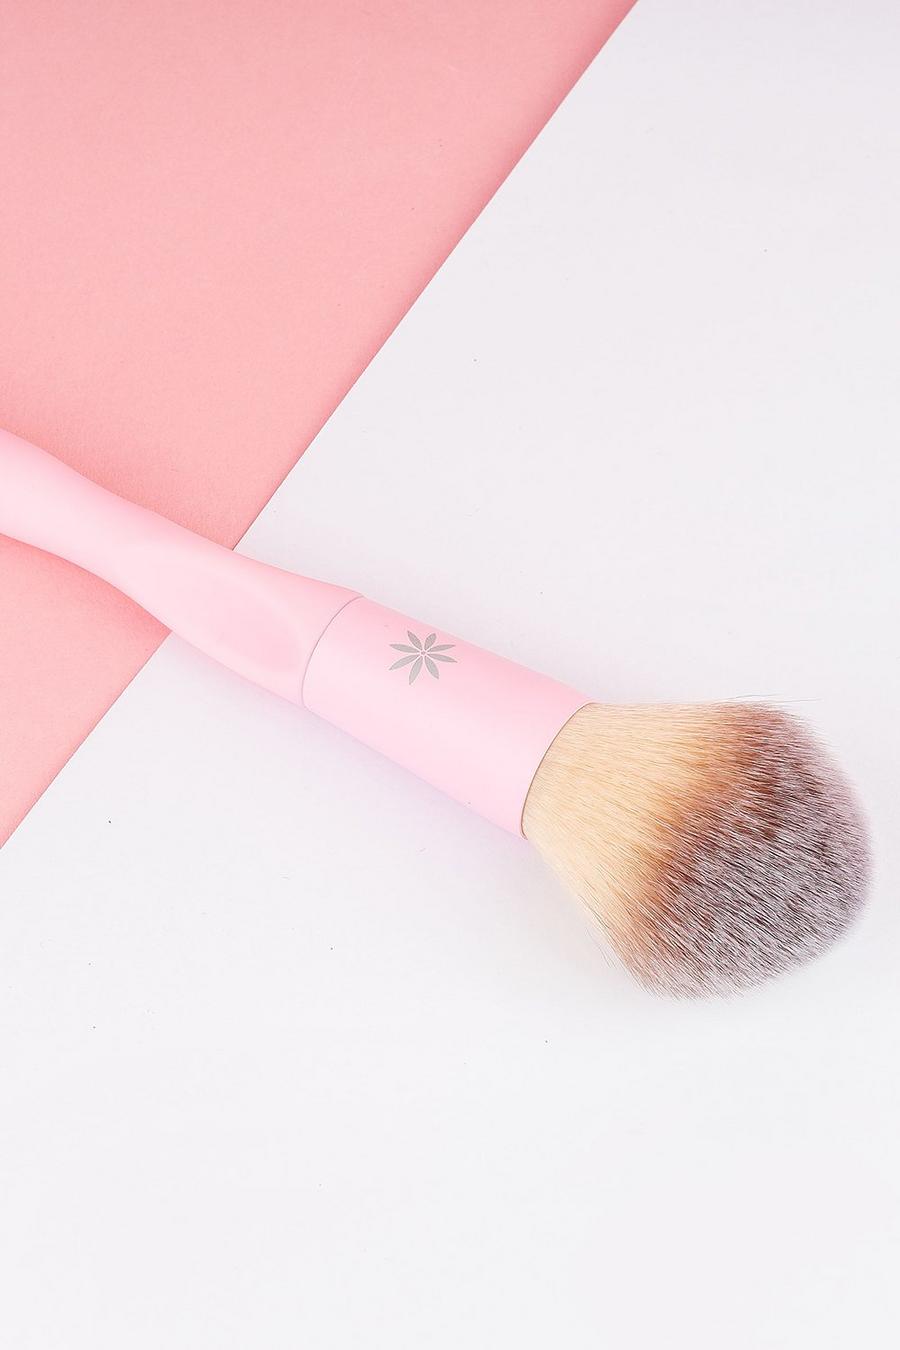 Brushworks - Pinceau applicateur de poudre, Baby pink rose